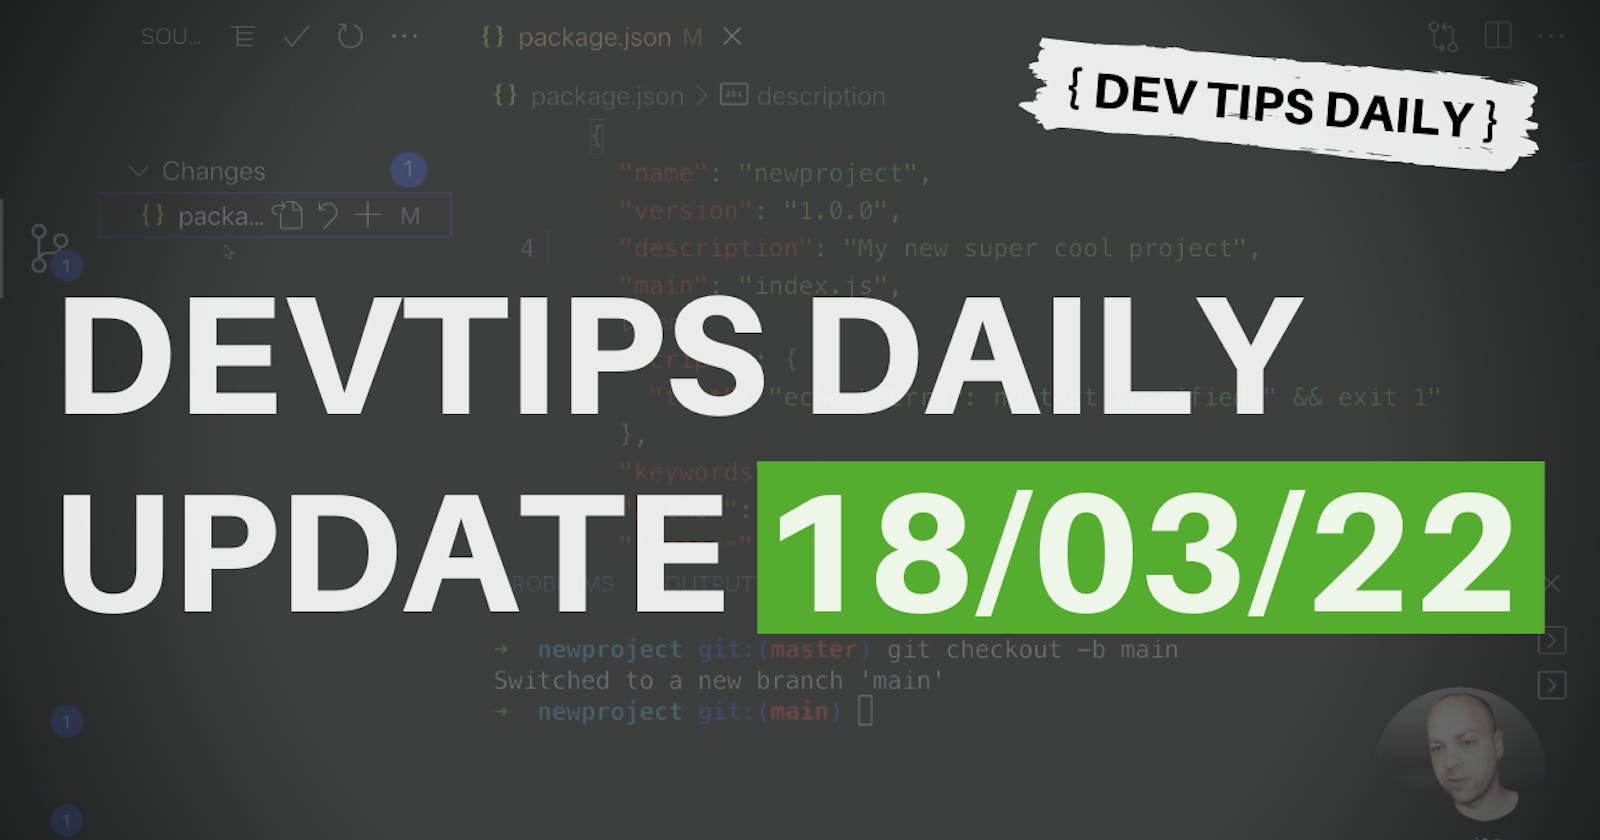 DevTips Daily Updates 18/03/22